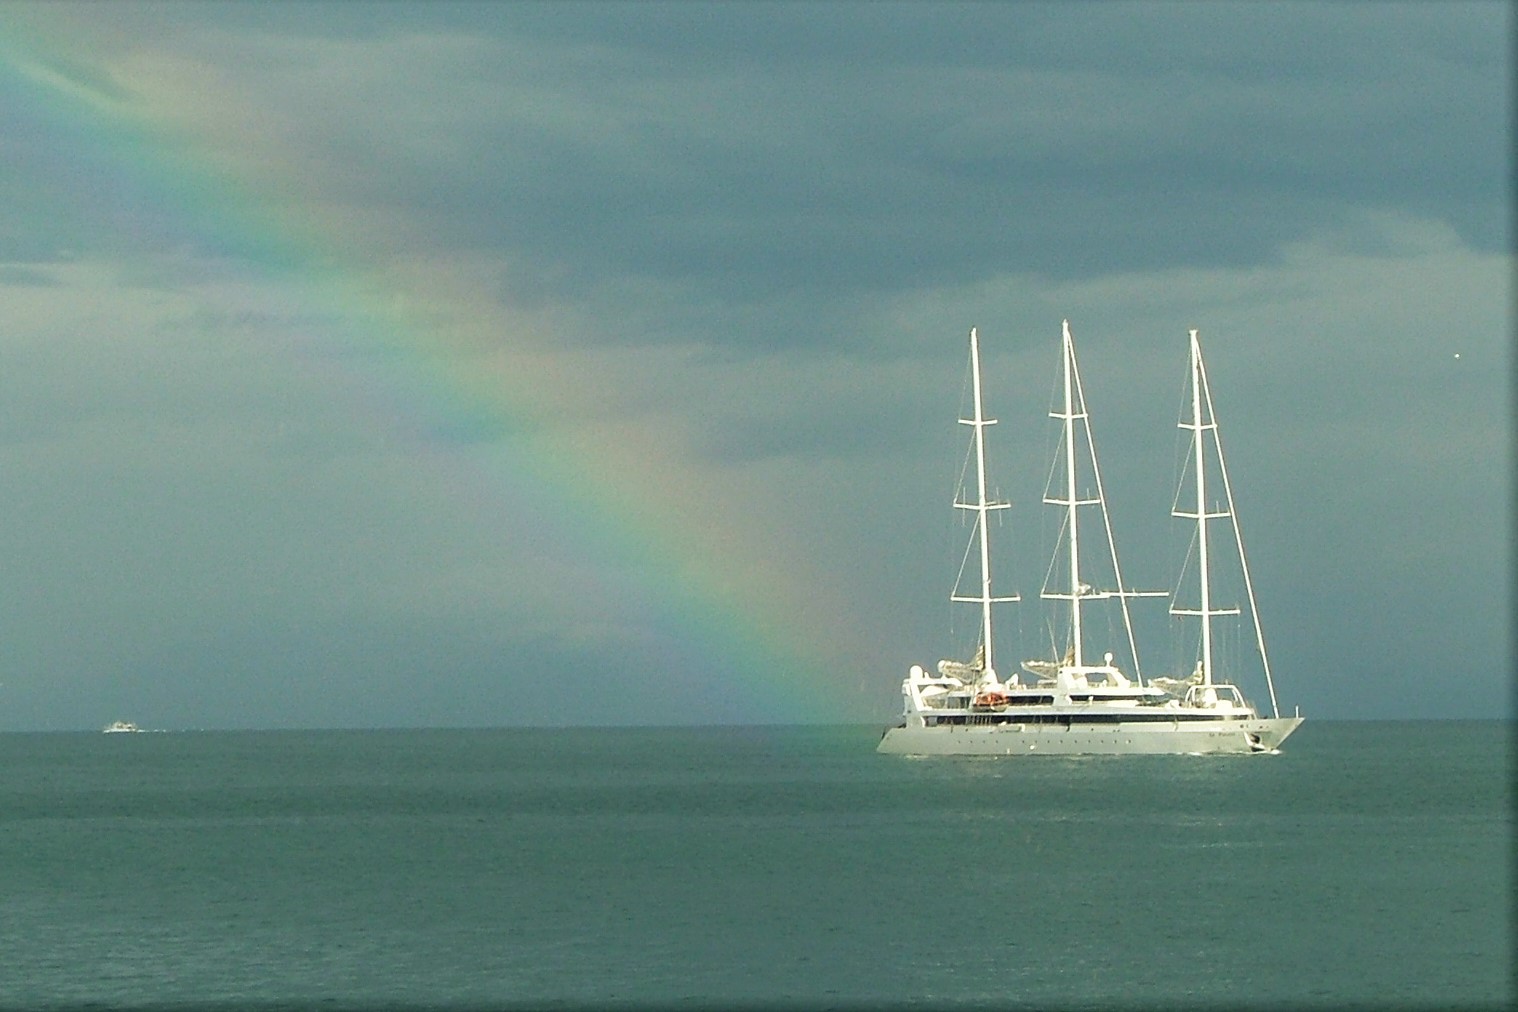 Rainbow at sea...